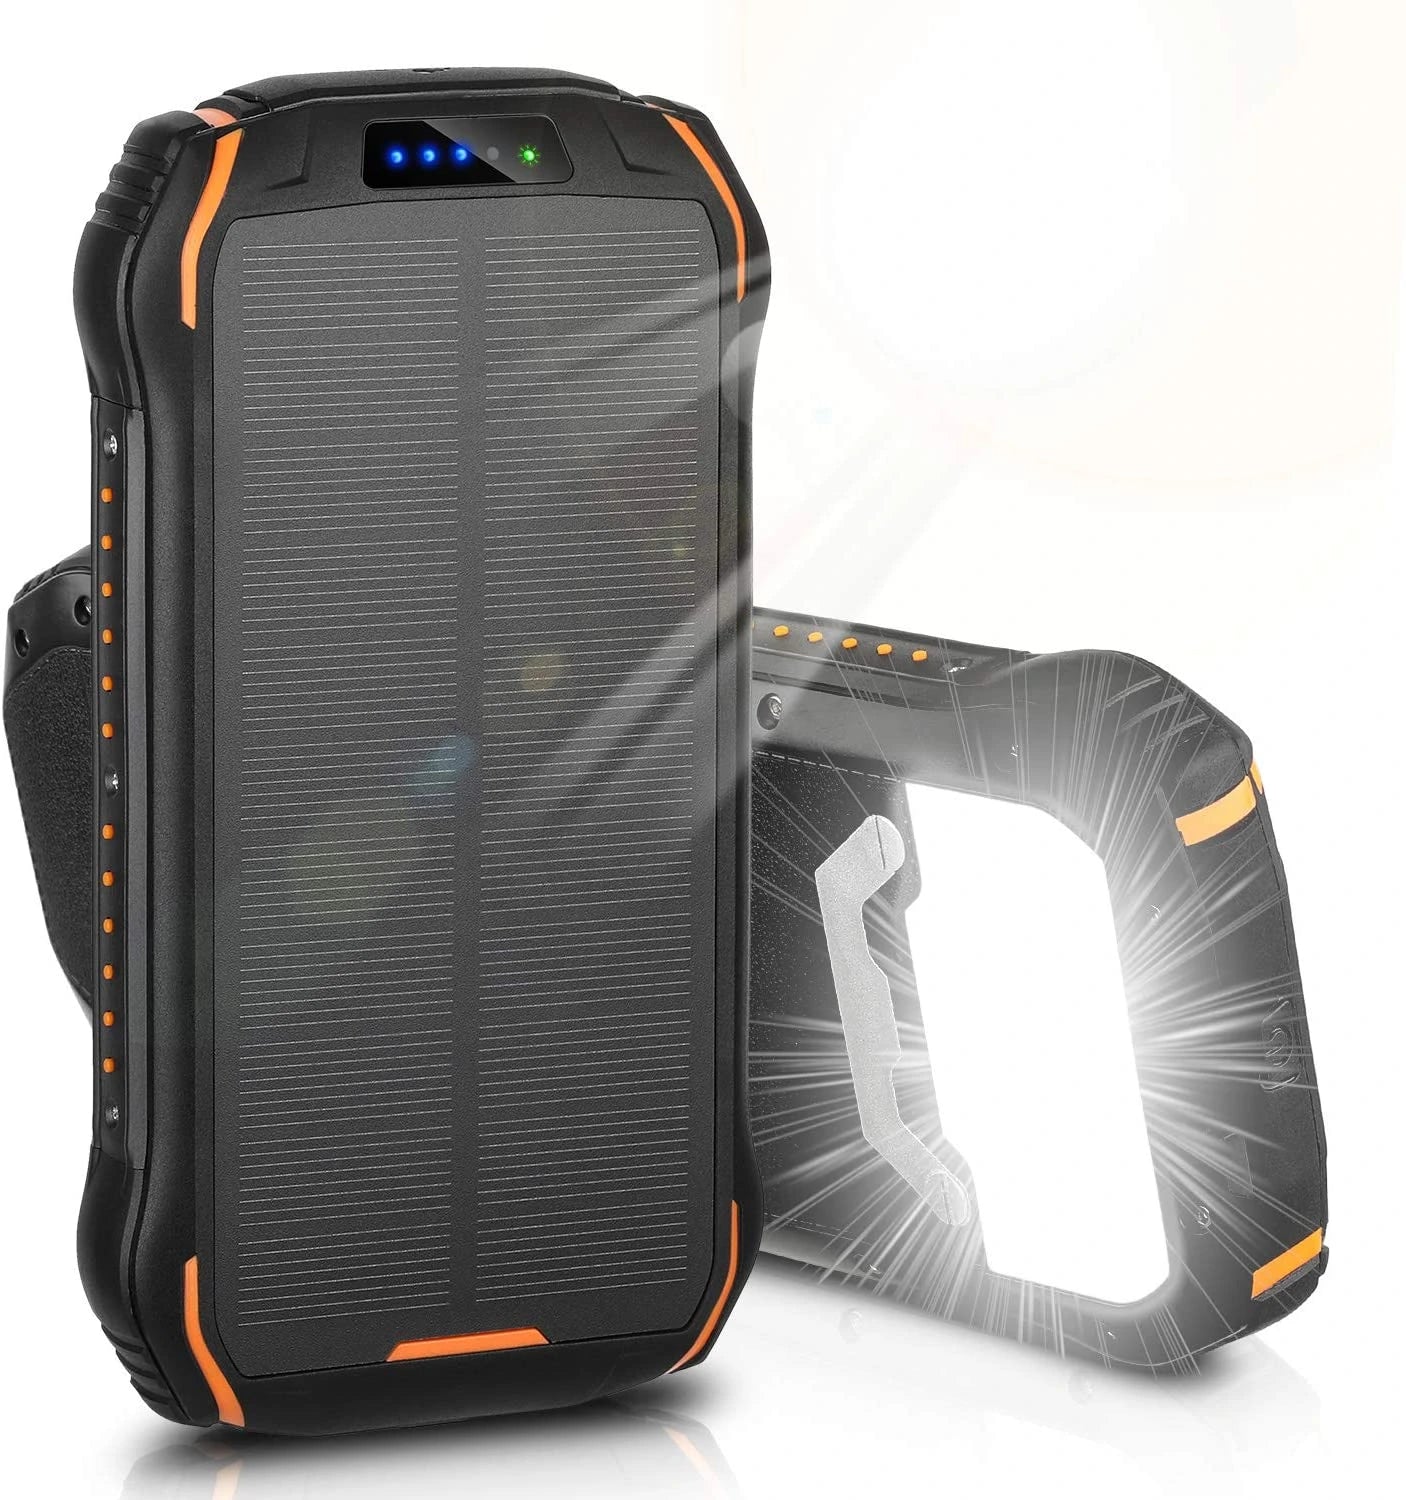 Portable Outdoor Solar Panel Power Bank 26800mAh - ENEGON